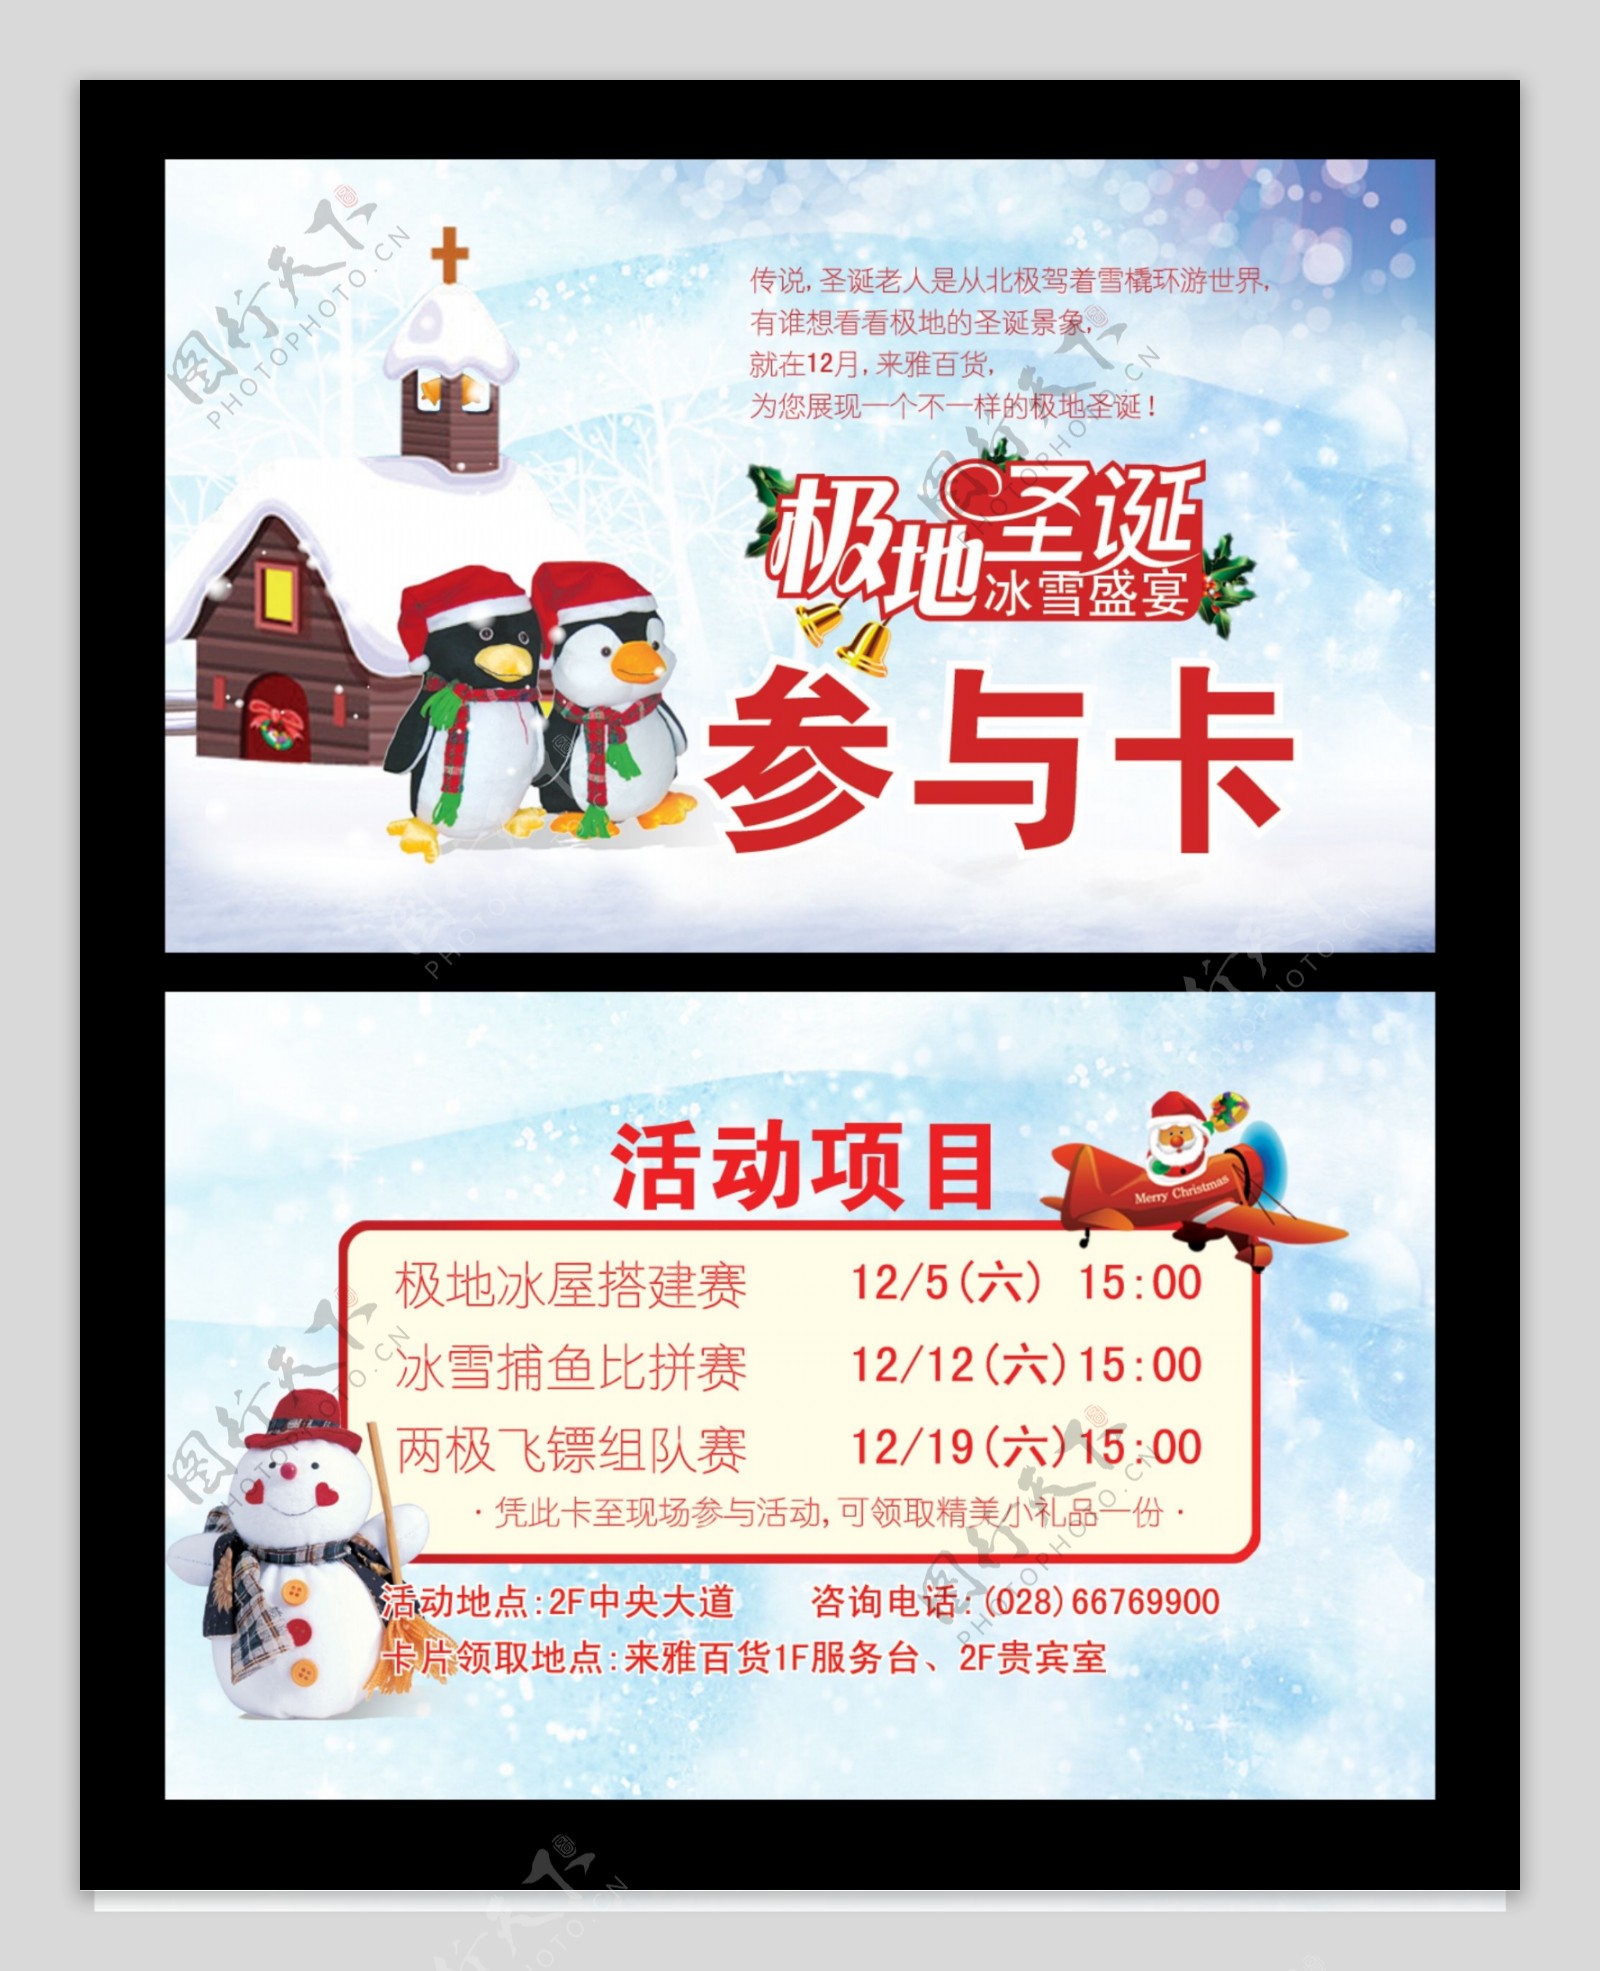 极地圣诞冰雪盛宴圣诞卡片参与卡活动百货商场图片